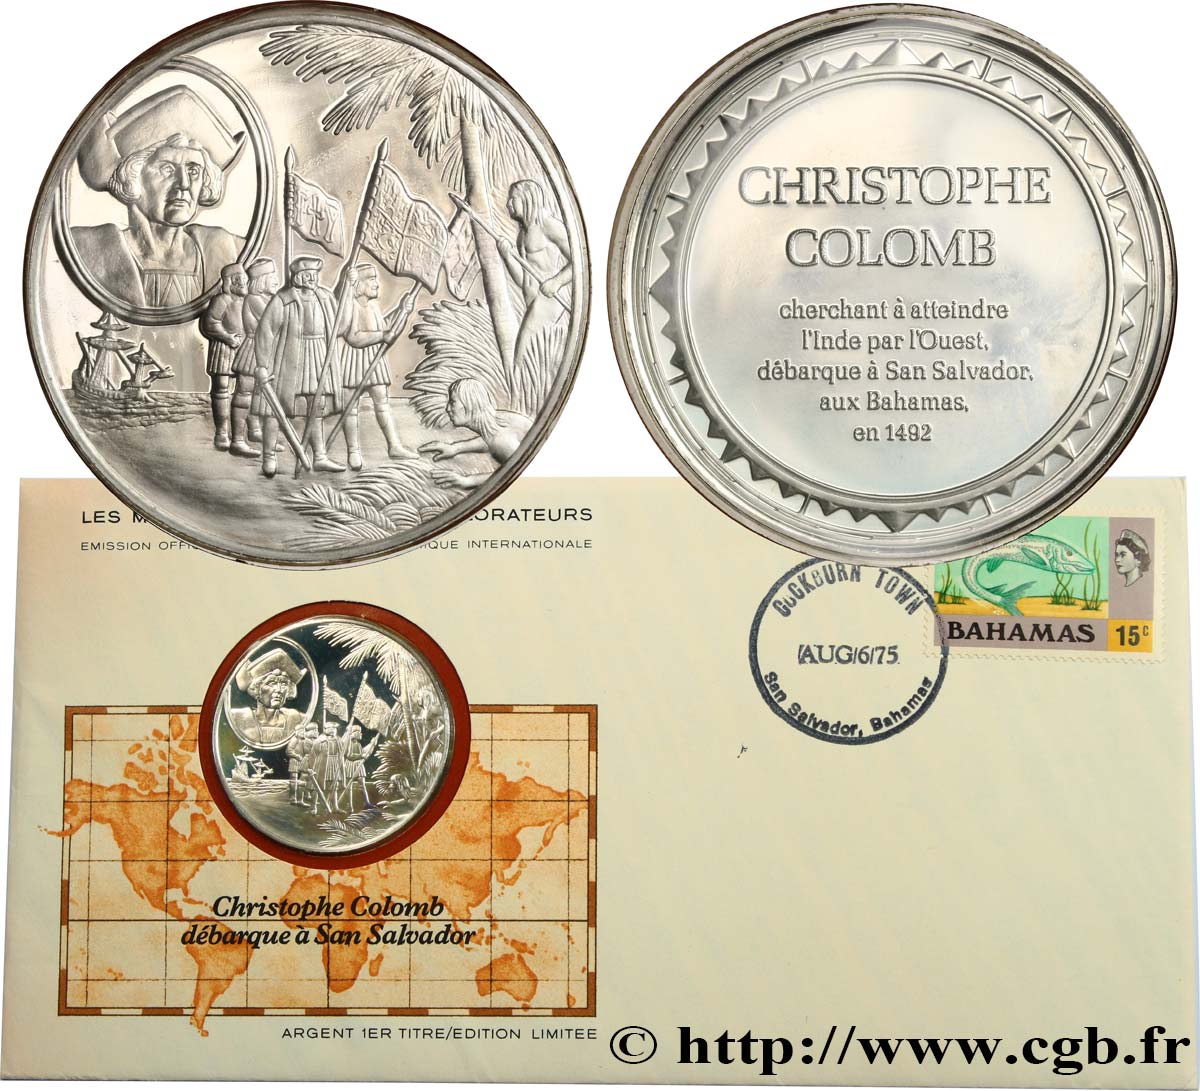 THE GREAT EXPLORERS  MEDALS Enveloppe “Timbre médaille”, Christophe Colomb débarque à San Salvador MS